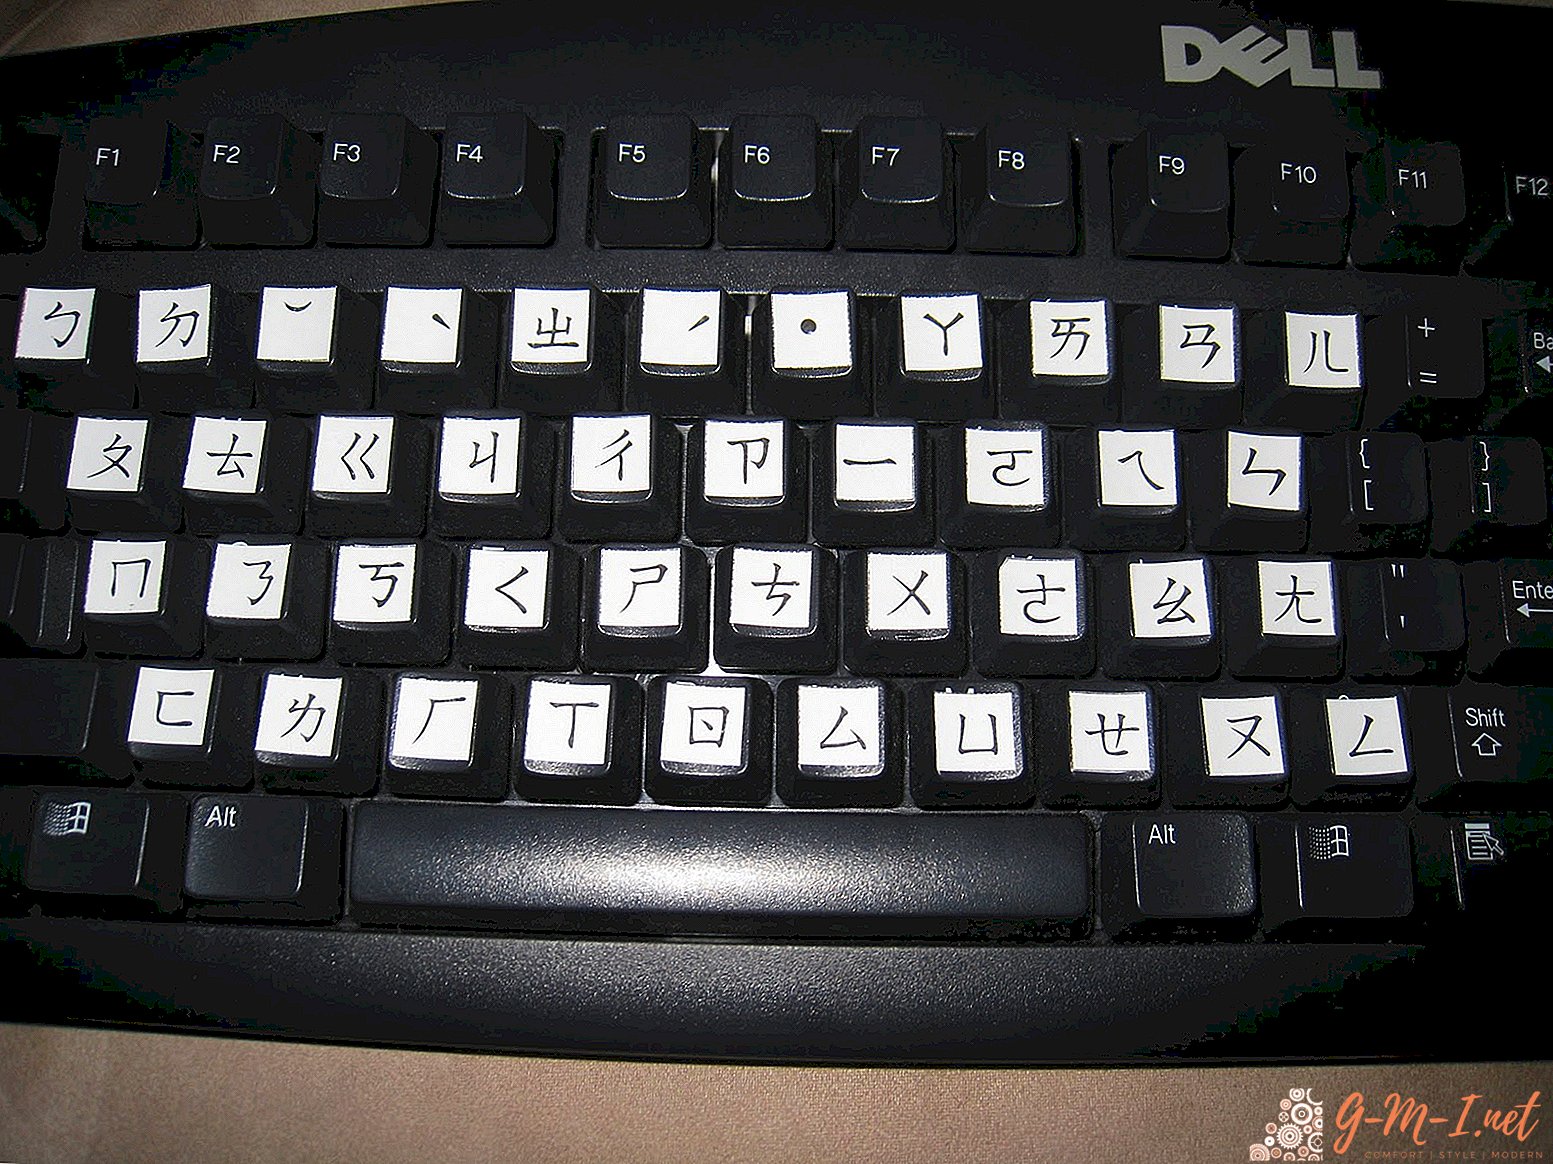 Chinese keyboard layout